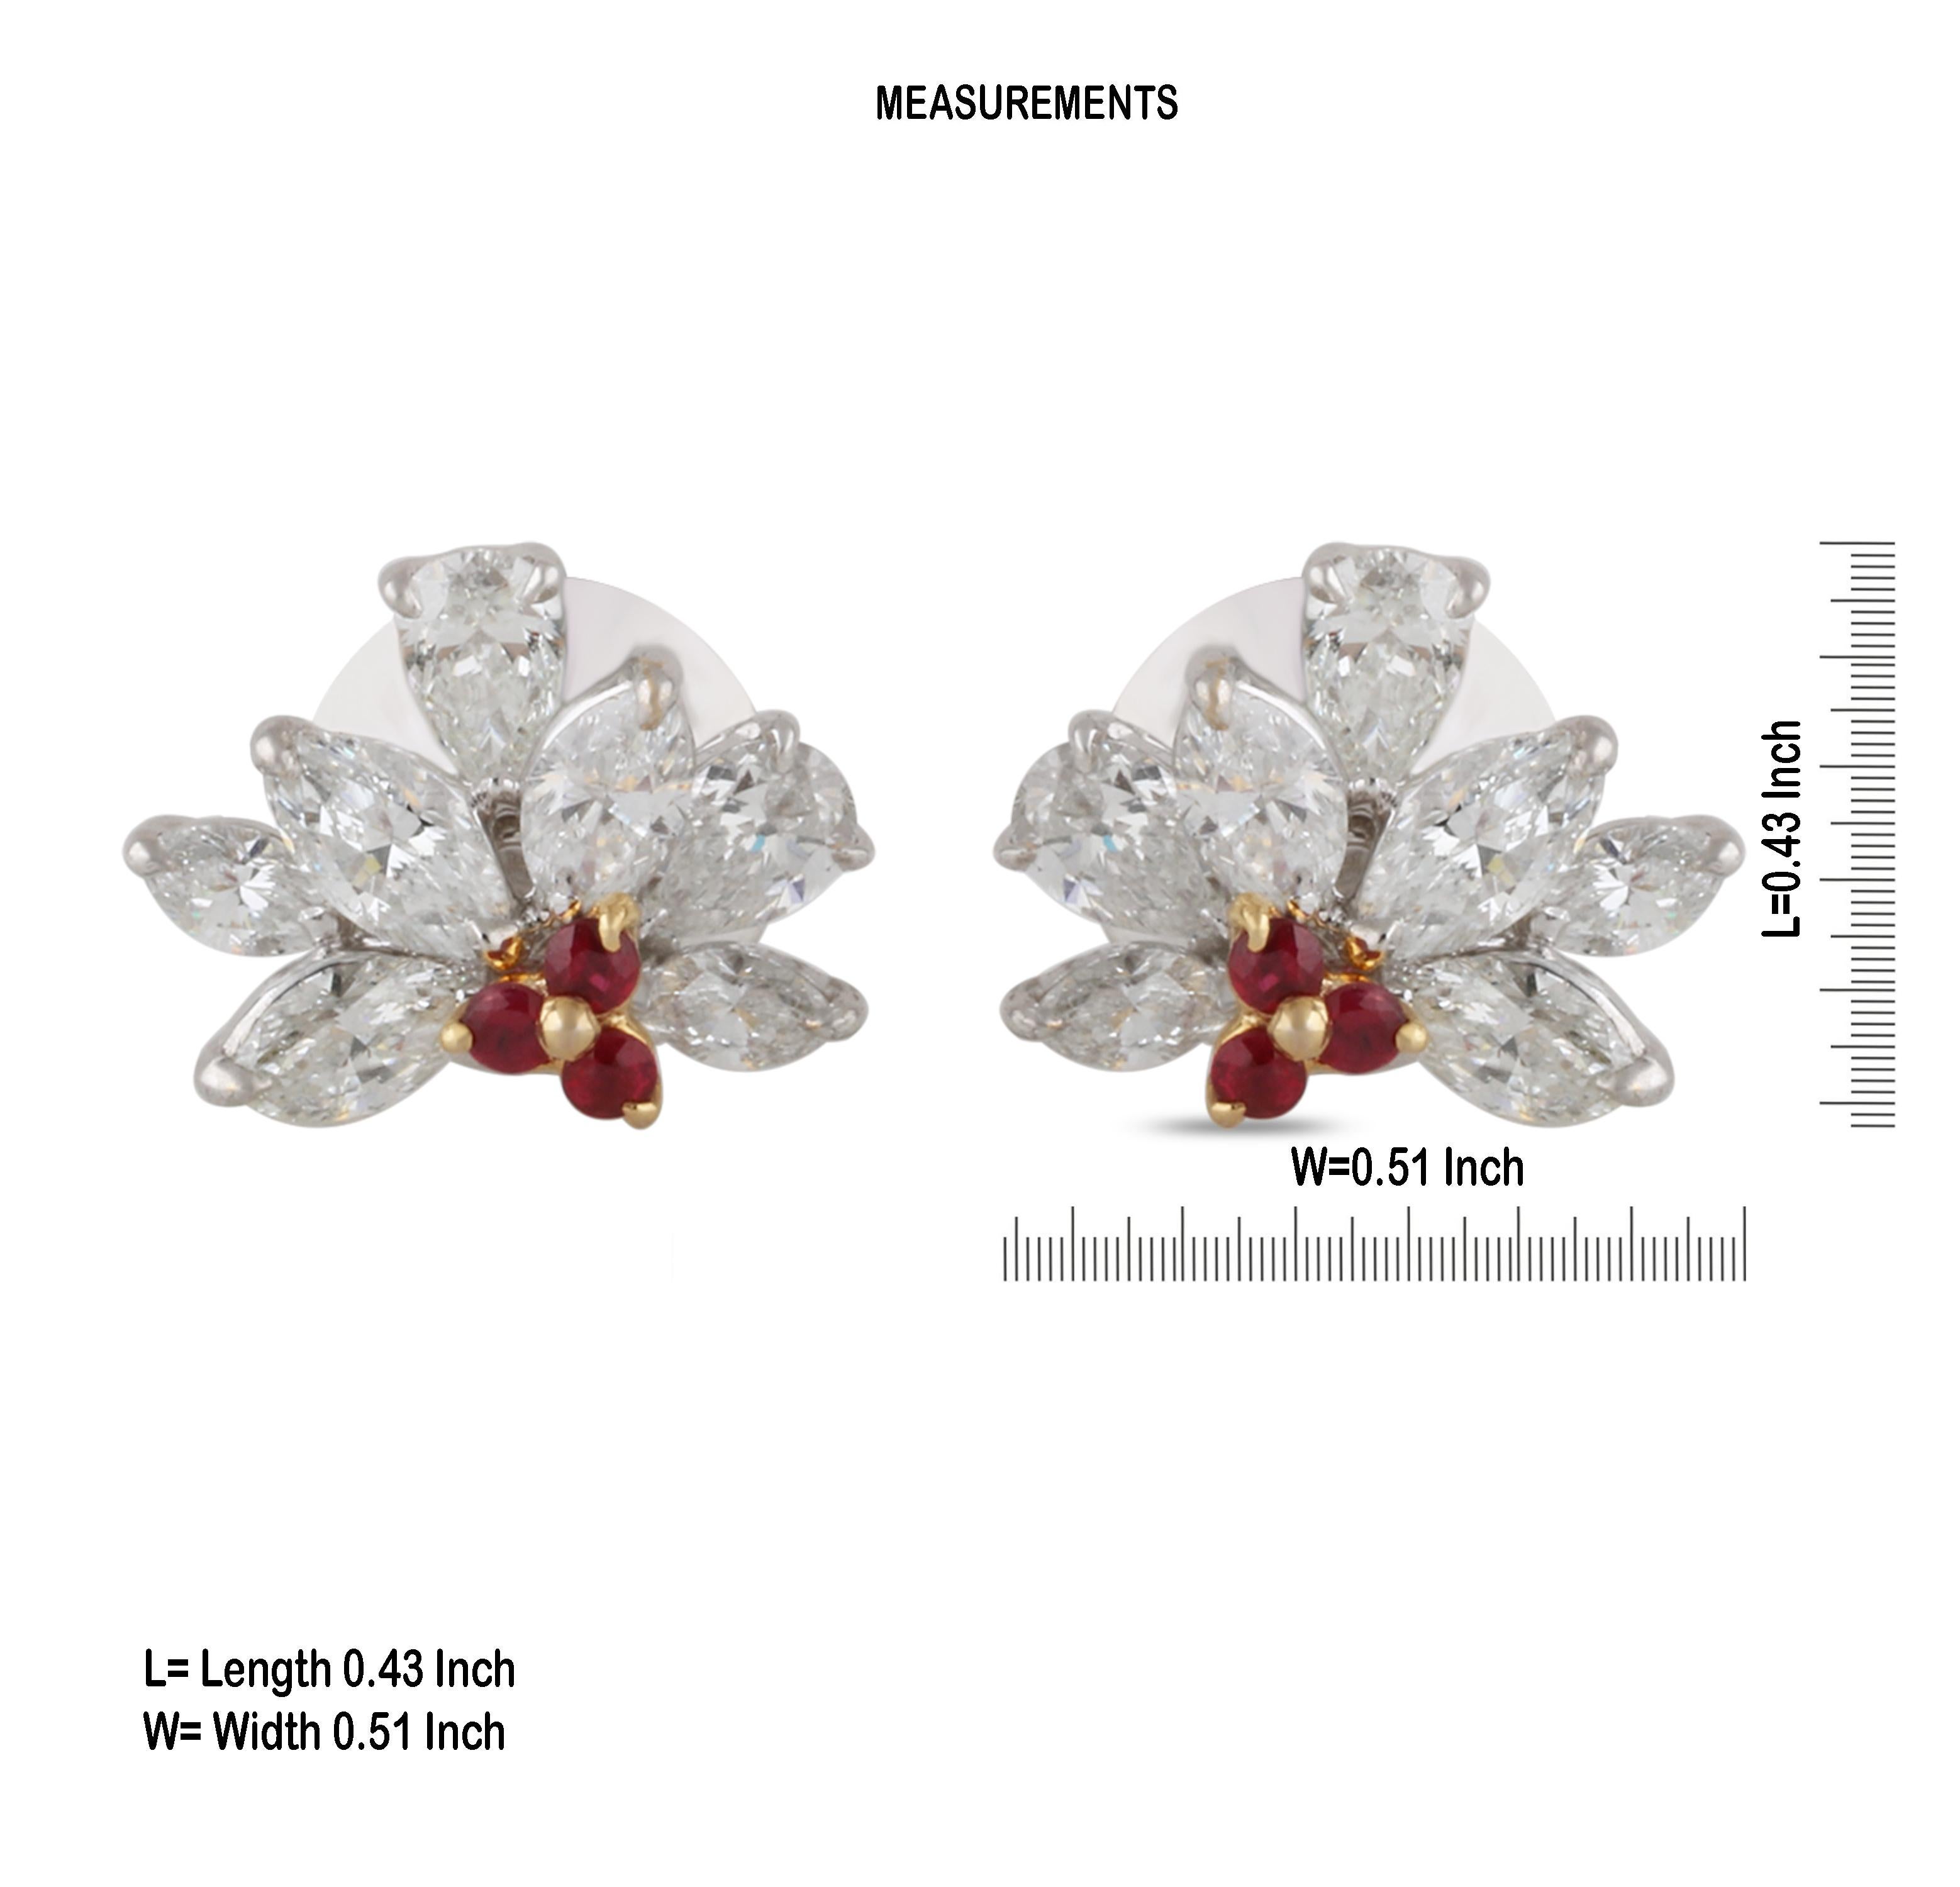 Marquise Cut Studio Rêves Diamond and Rubies Stud Earrings in 18 Karat Gold For Sale